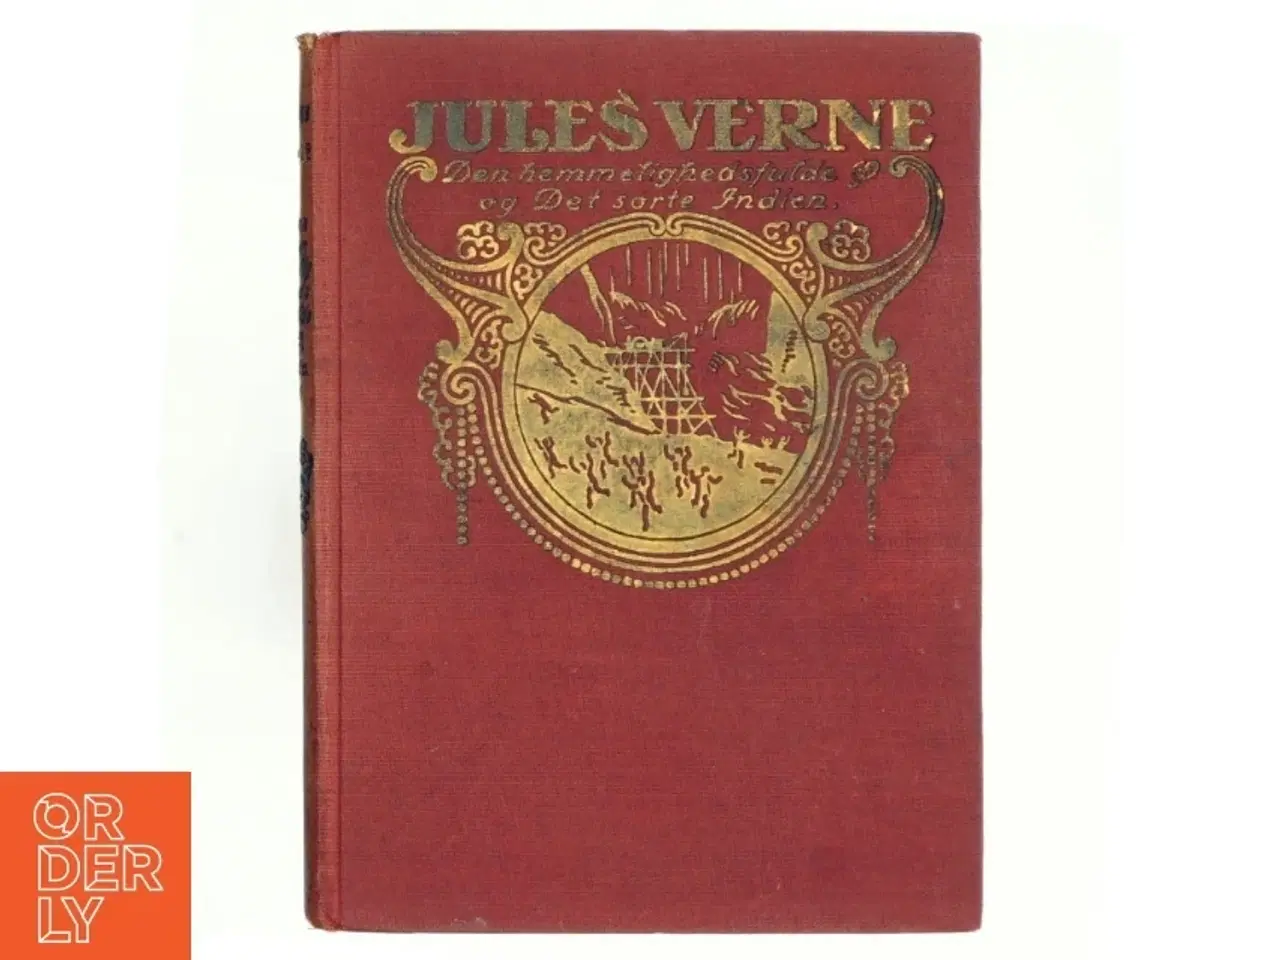 Billede 1 - Den hemmelighedsfulde ø og Det sorte Indien af Jules Verne (bog)